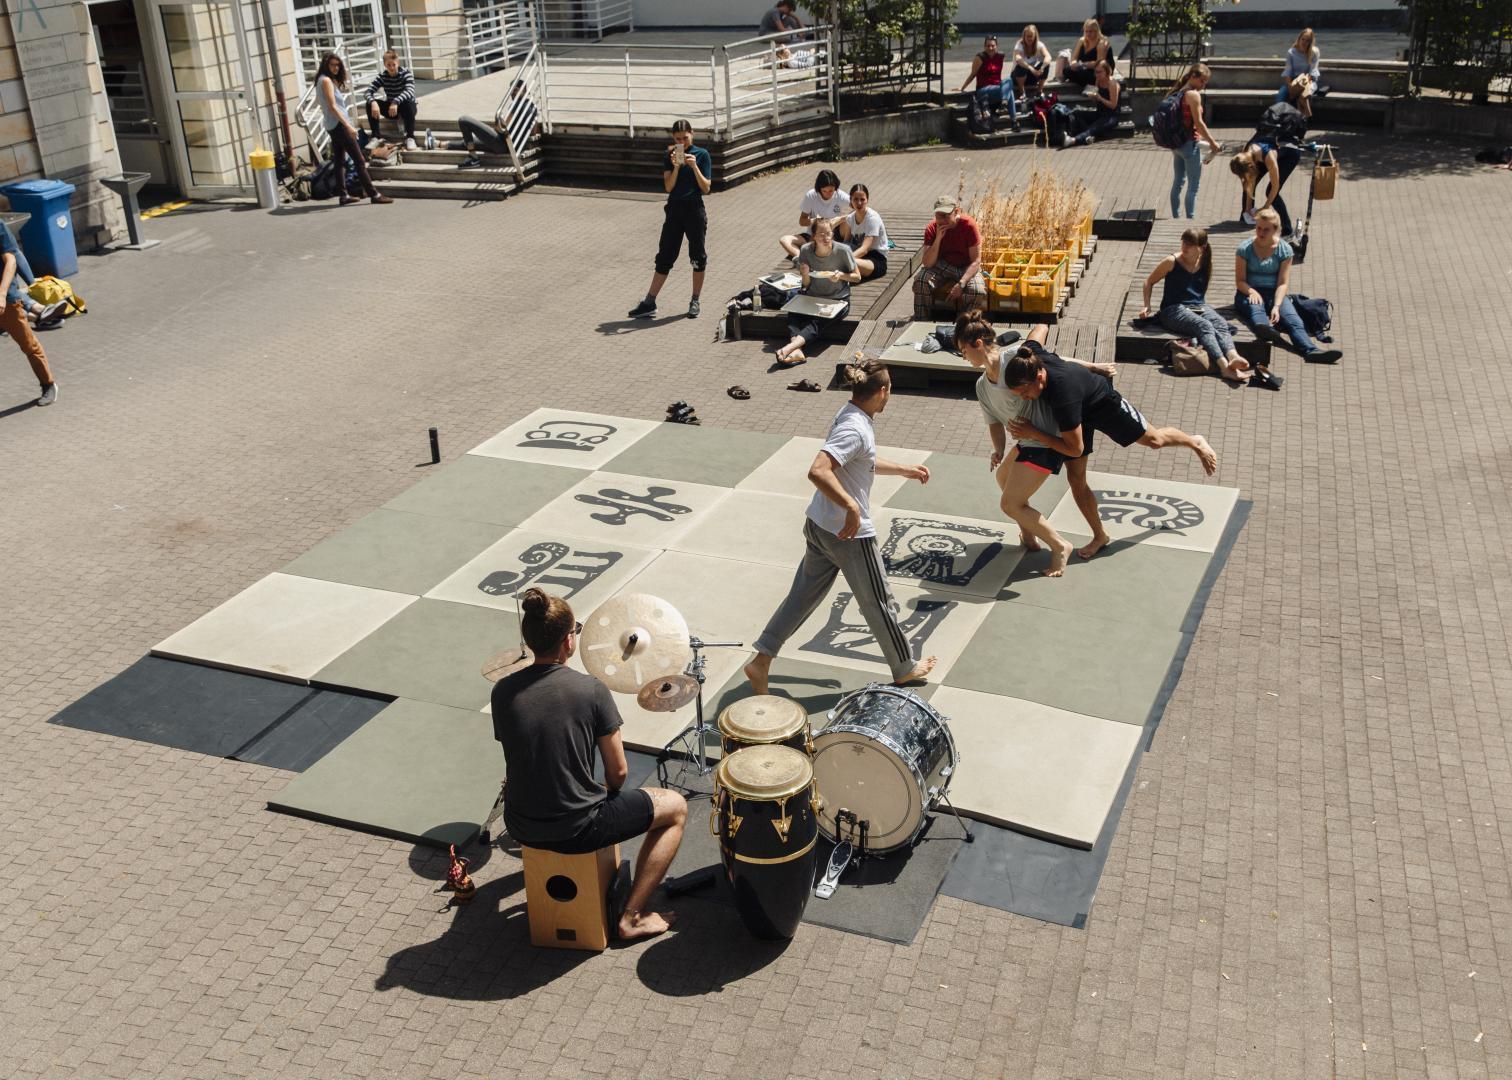 Sommer im Innenhof der HfMDK, Studierende tanzen, sitzen in der Sonne, eine Person spielt Schlagzeug.